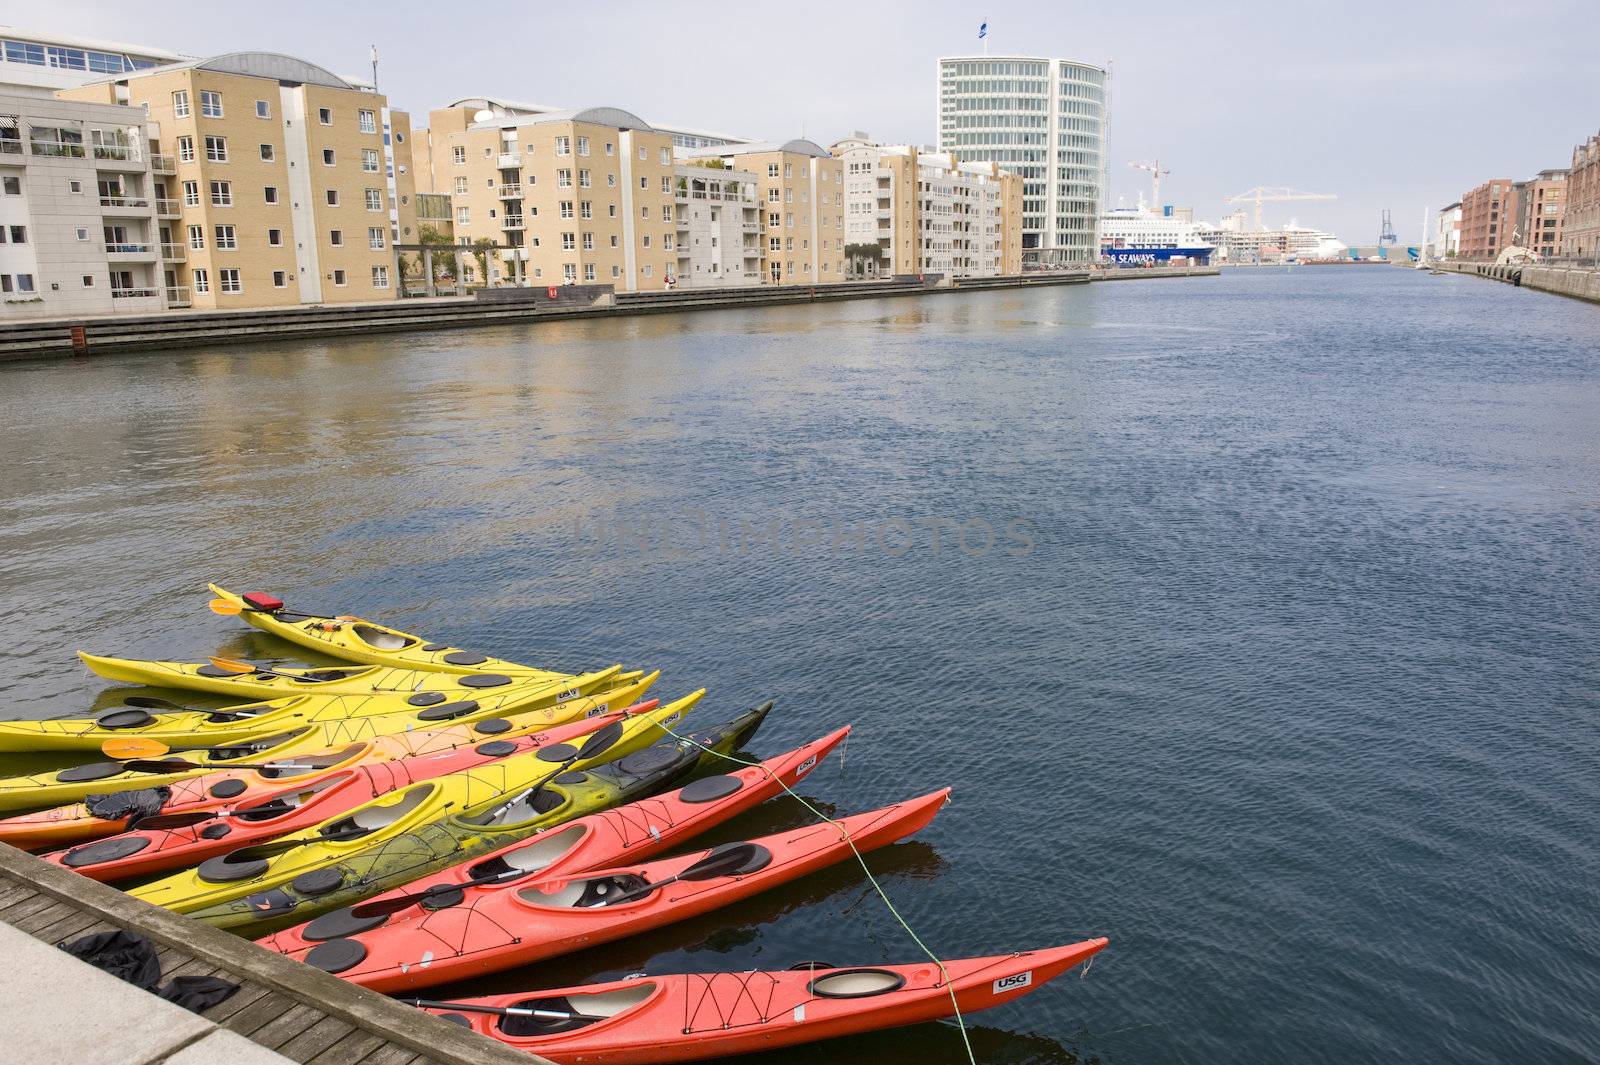 Parking sports canoes in Copenhagen, Denmark. Taken on June 2012.